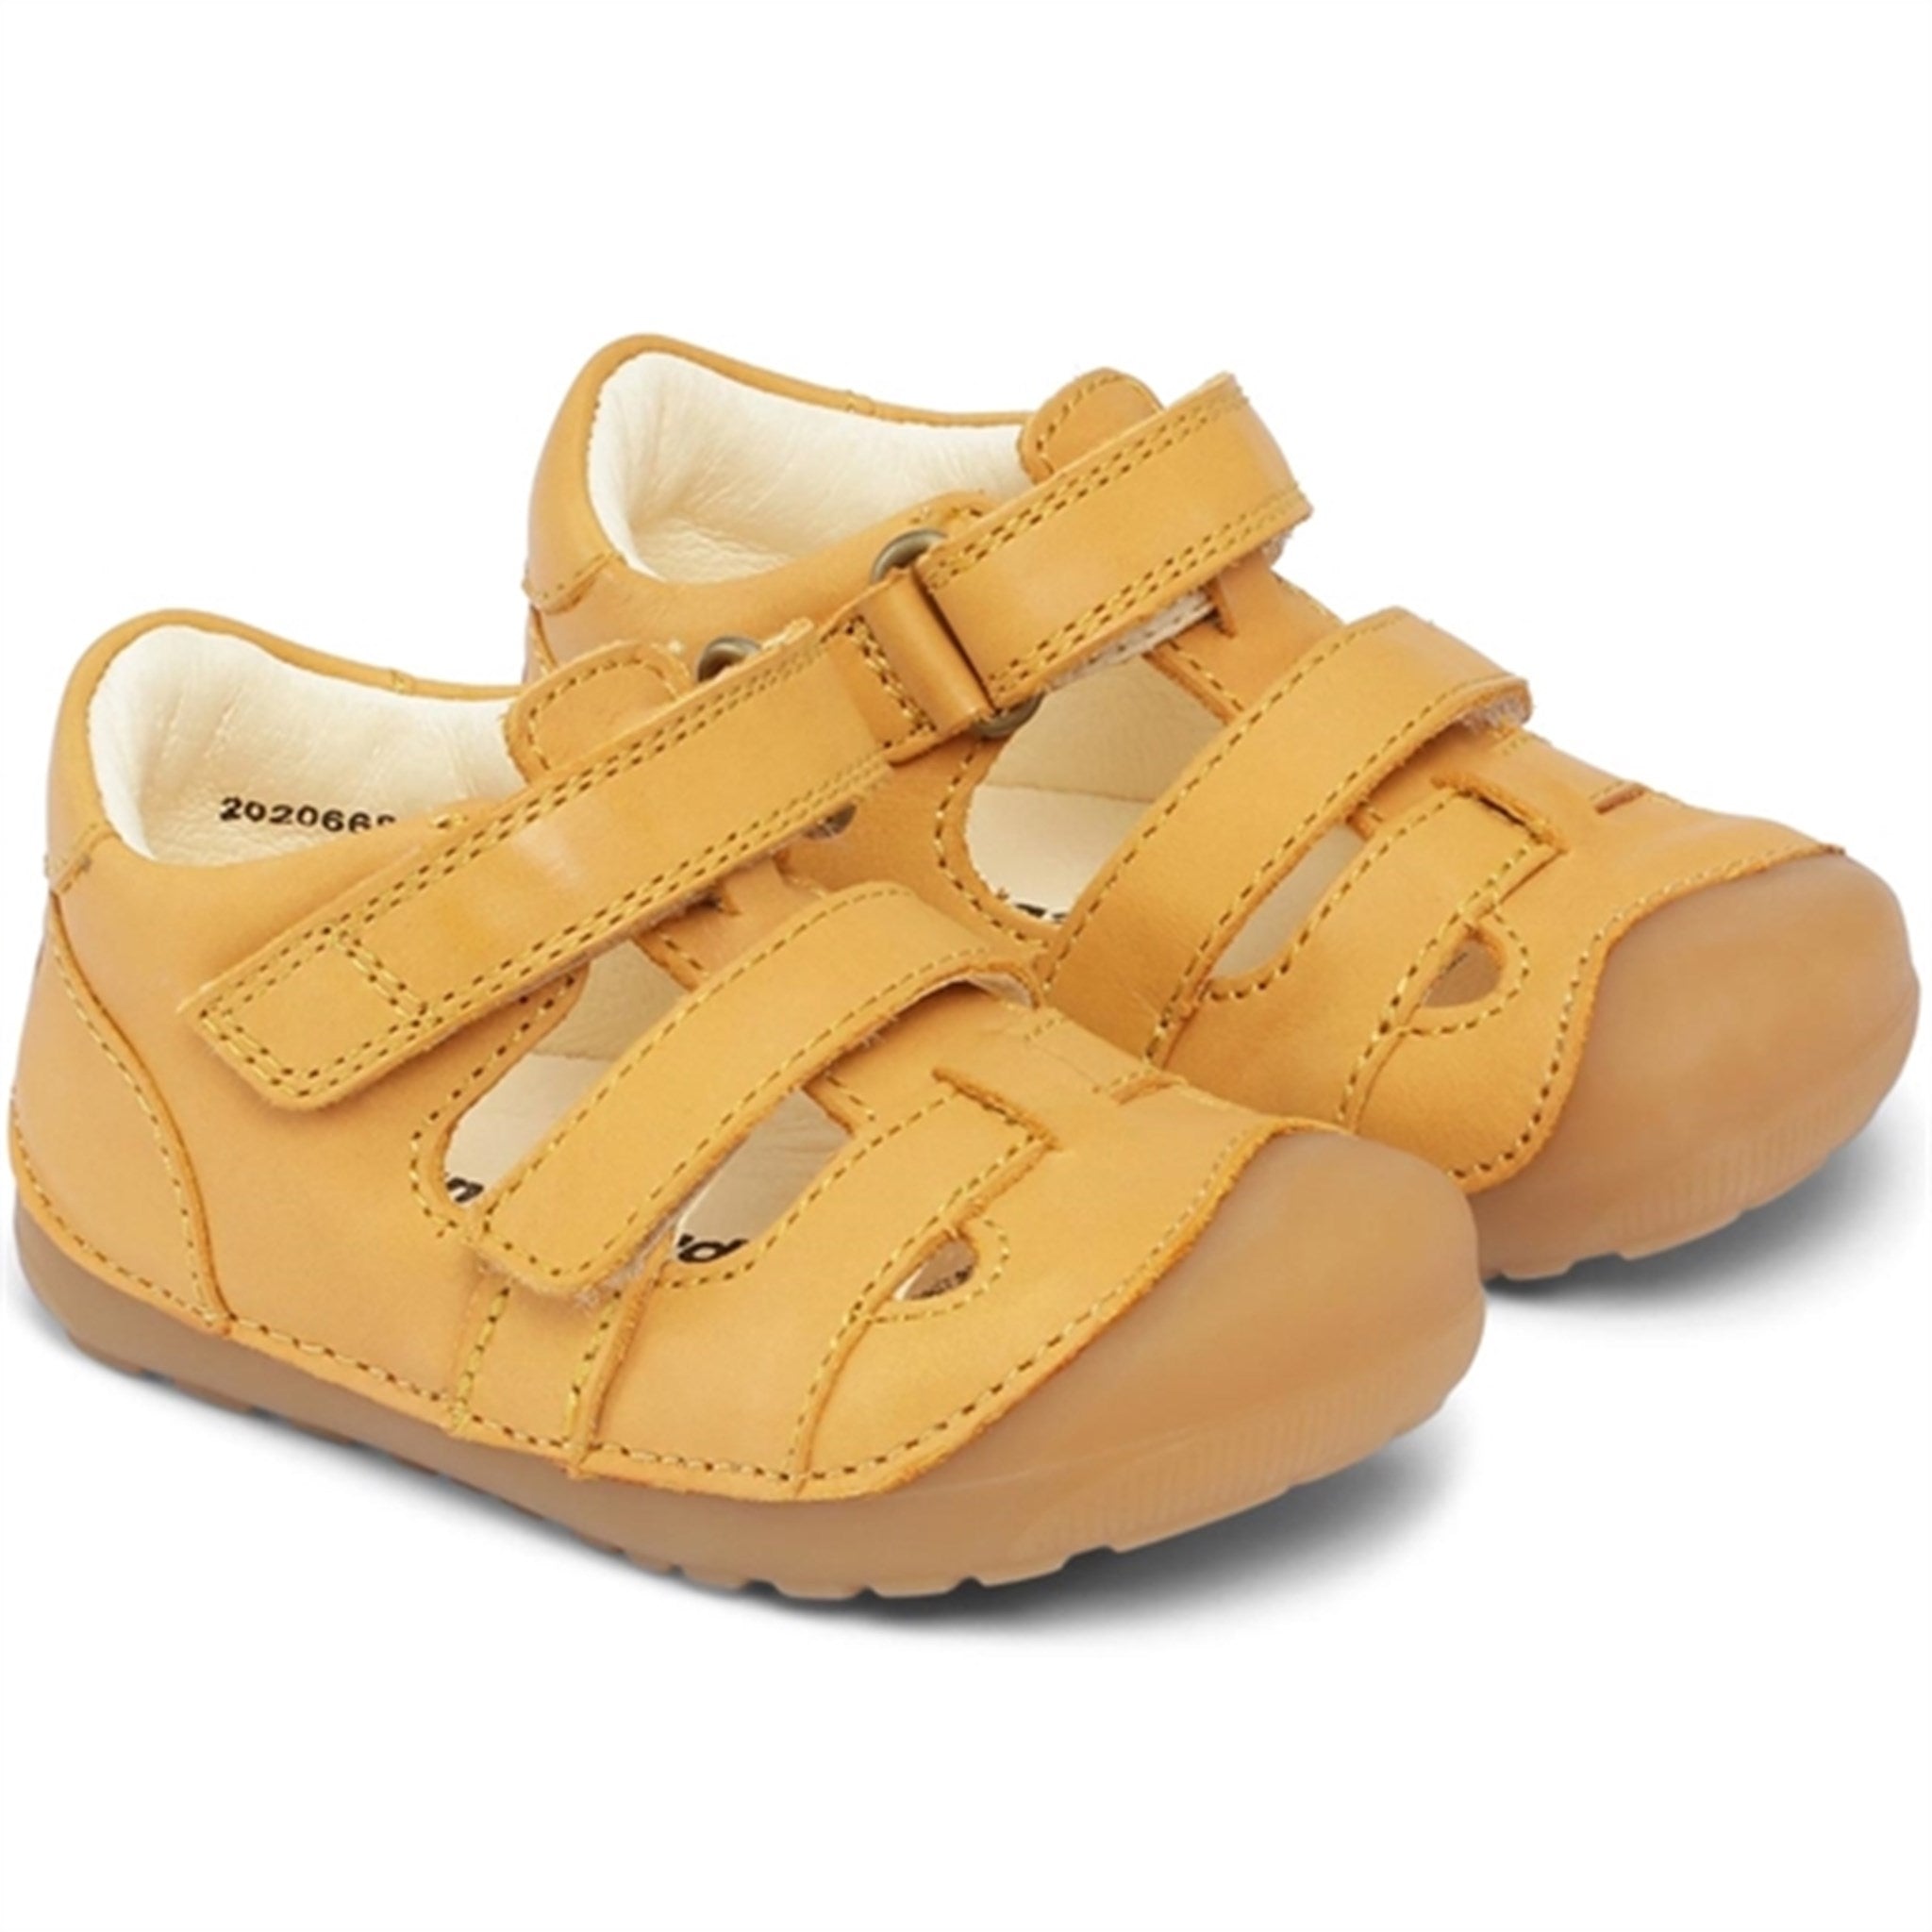 Bundgaard Petit Sandal Yellow 2